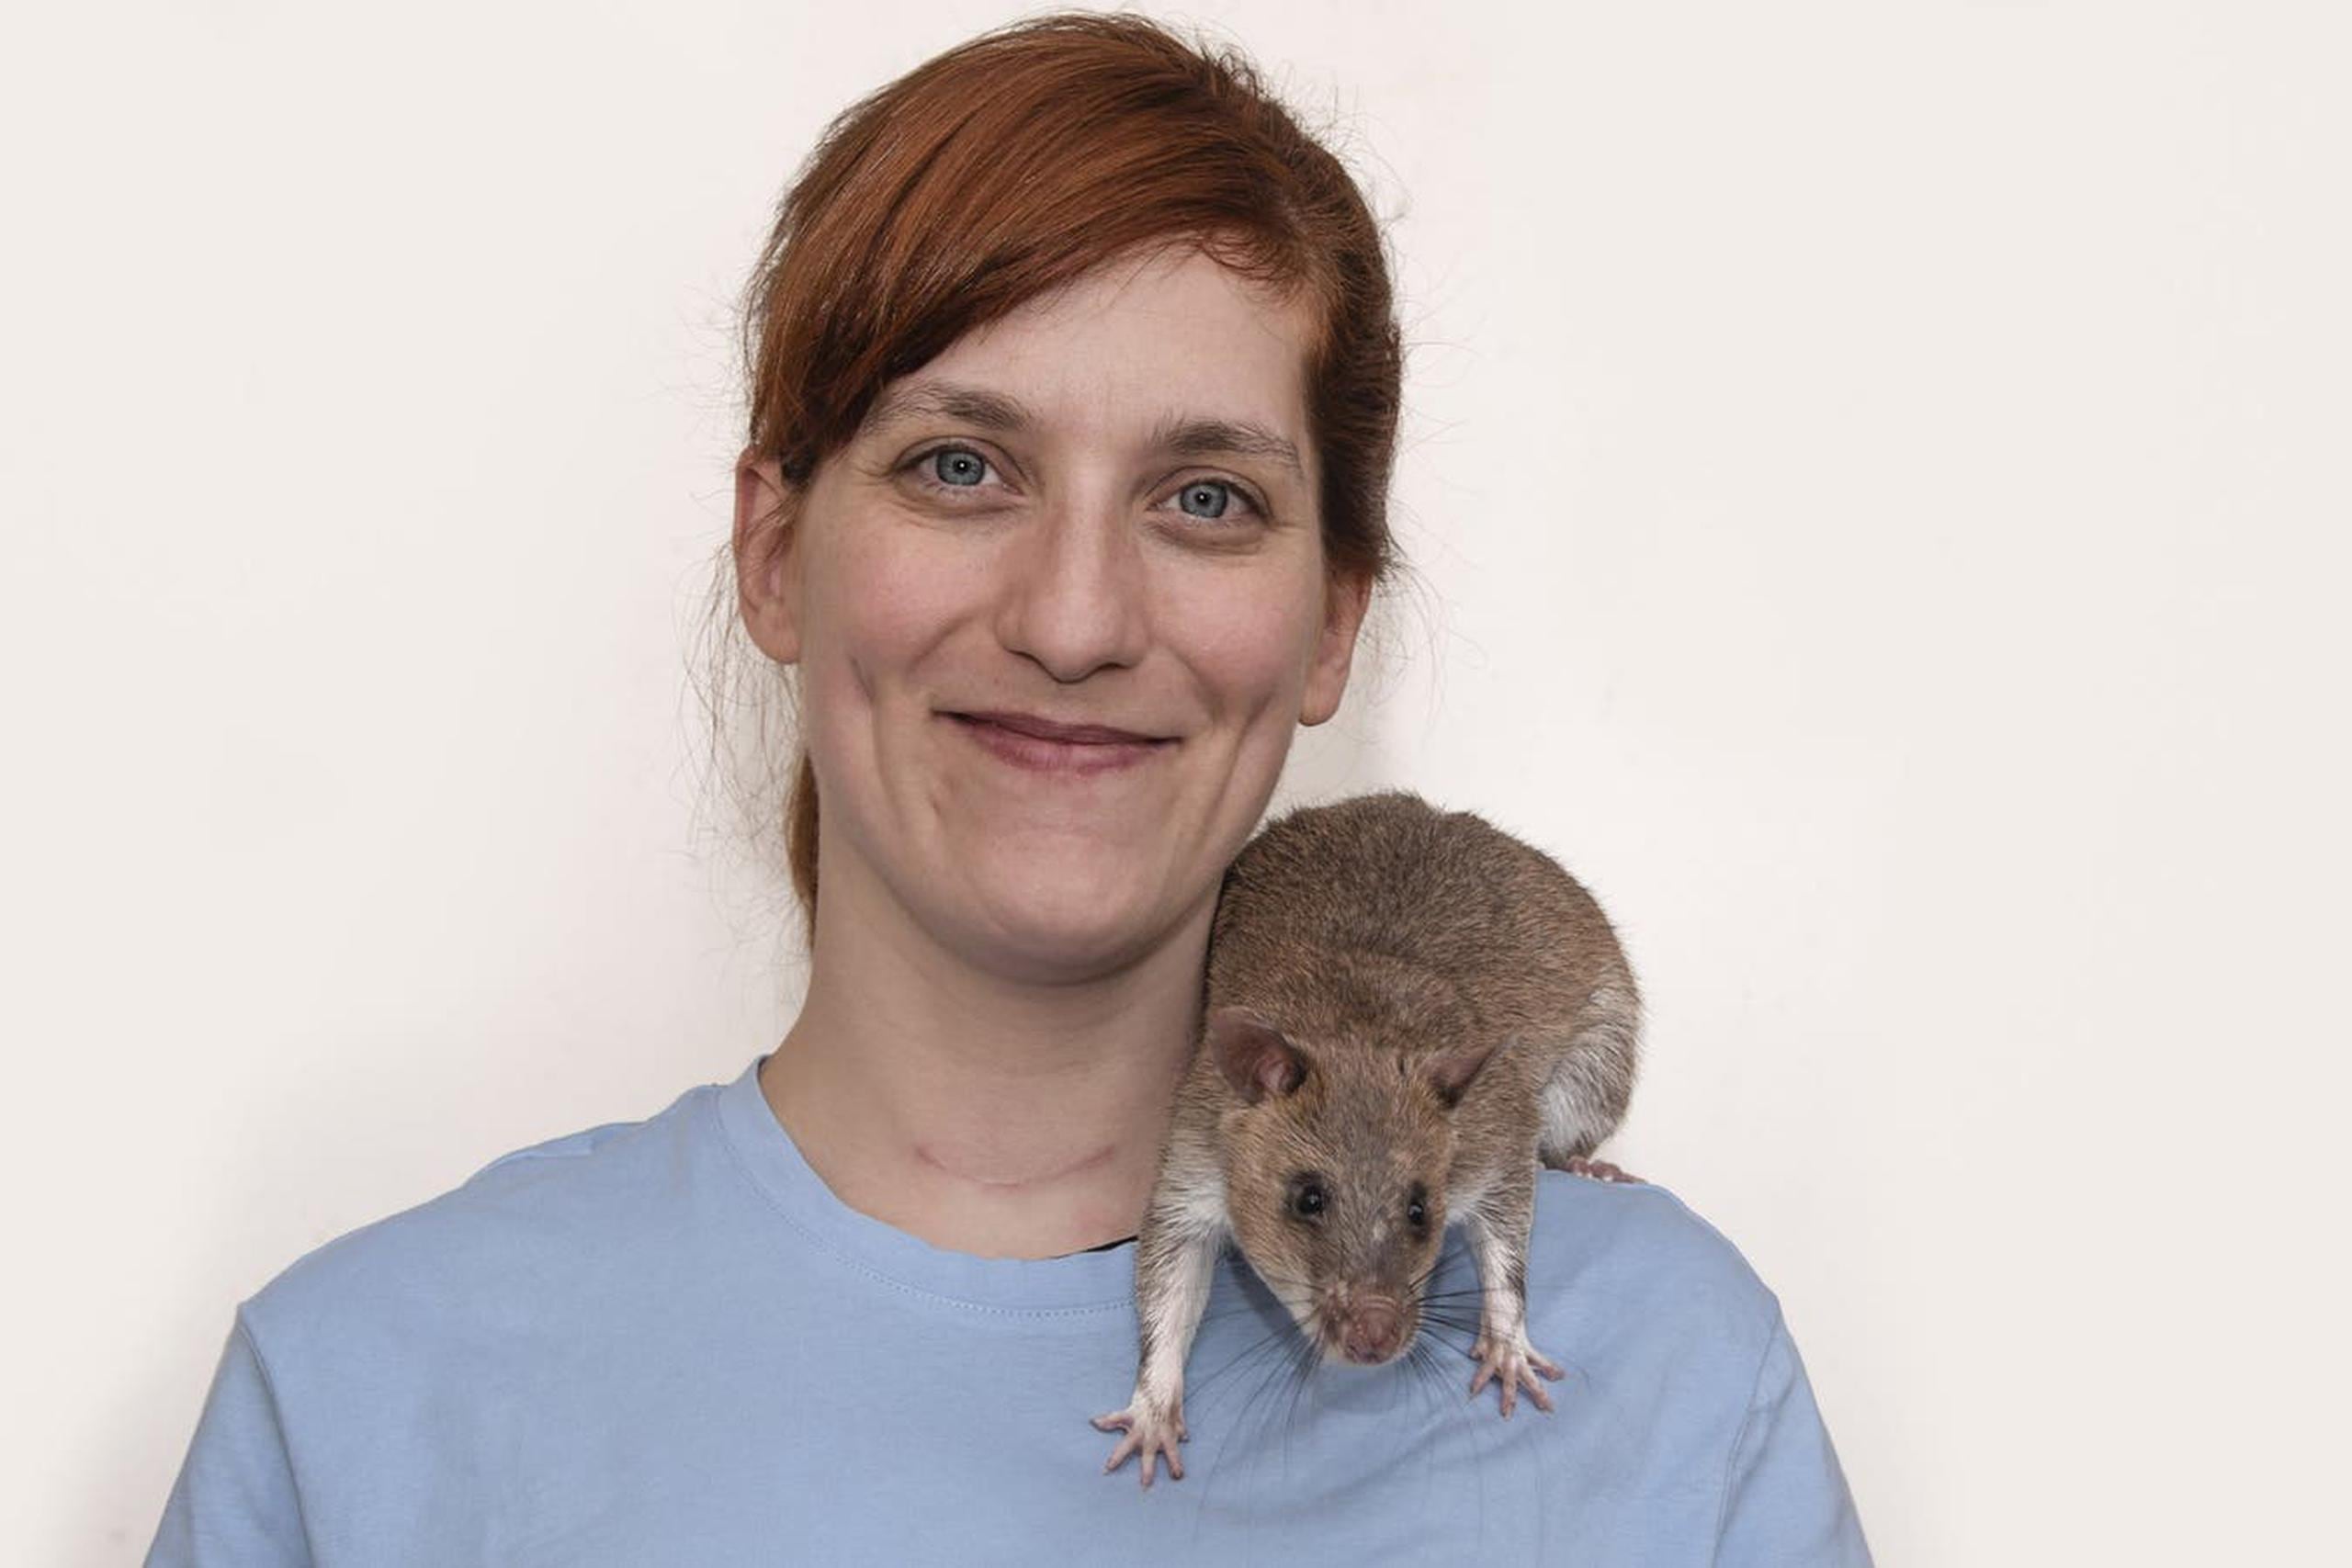 De joven, Micaela rescataba ratas sobrevivientes de experimentos y las adoptaba como mascotas en su casa de Palermo.